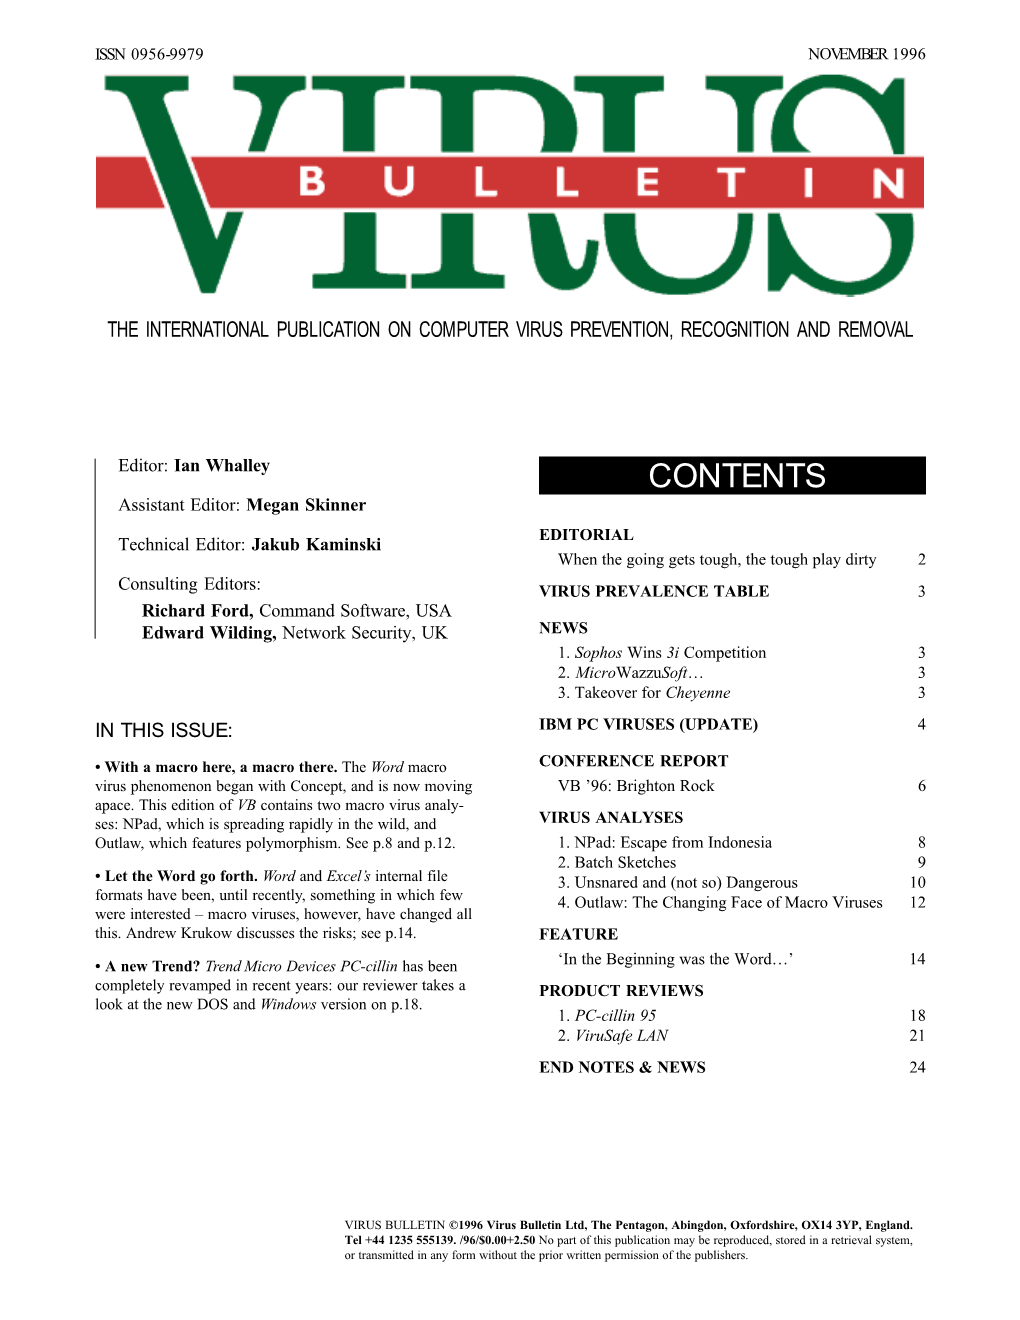 Virus Bulletin, November 1996